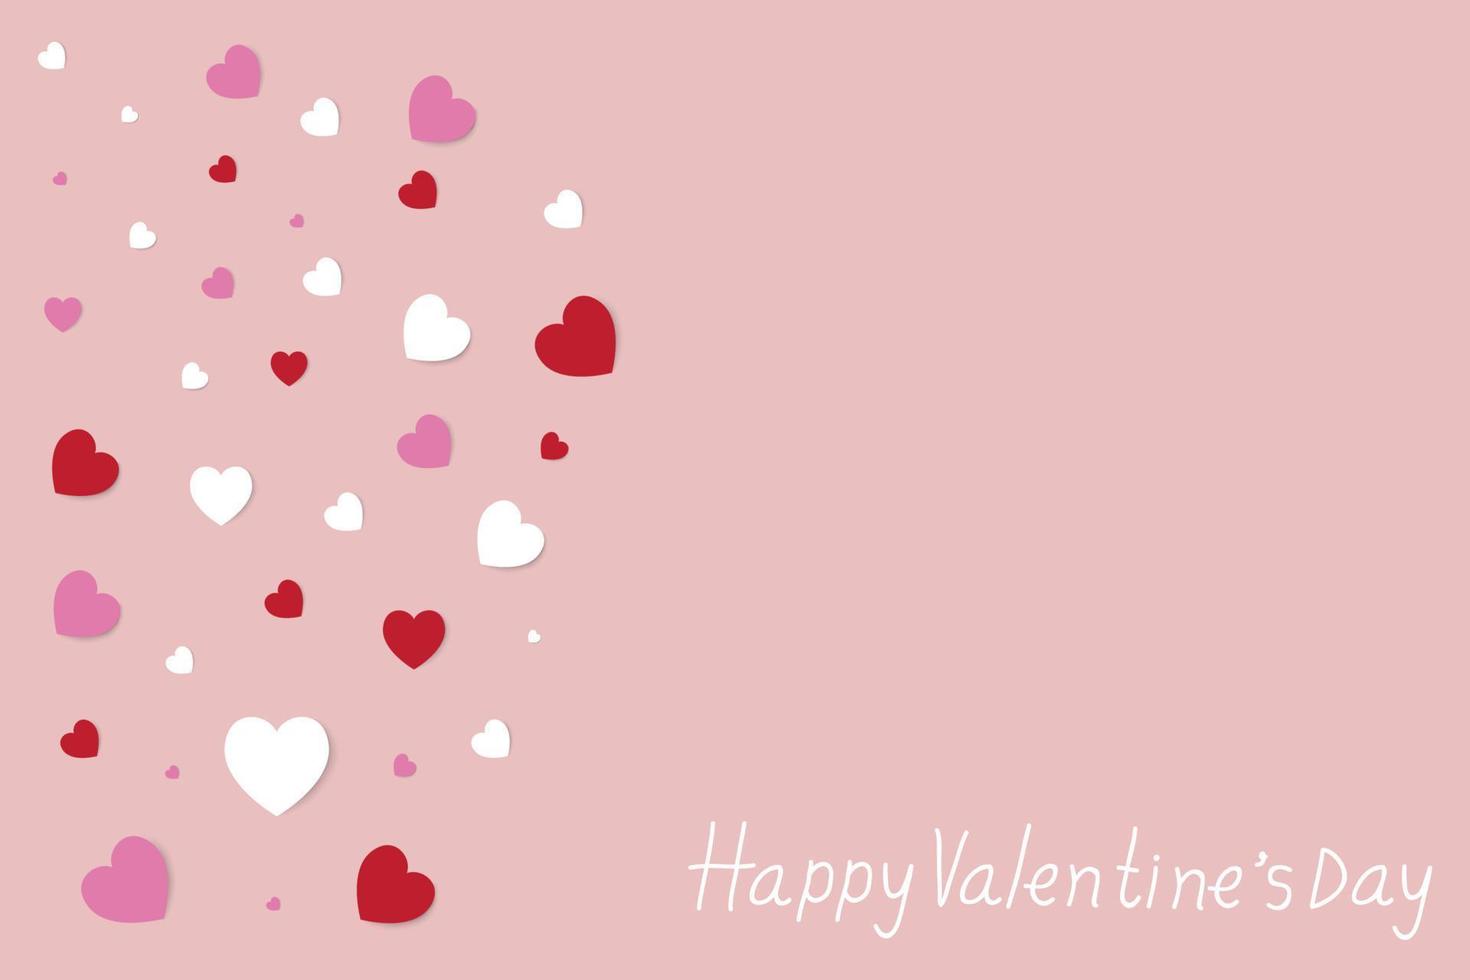 glad alla hjärtans dag med handbokstäver, många vackra hjärtformar på rosa bakgrund. vektor illustration.